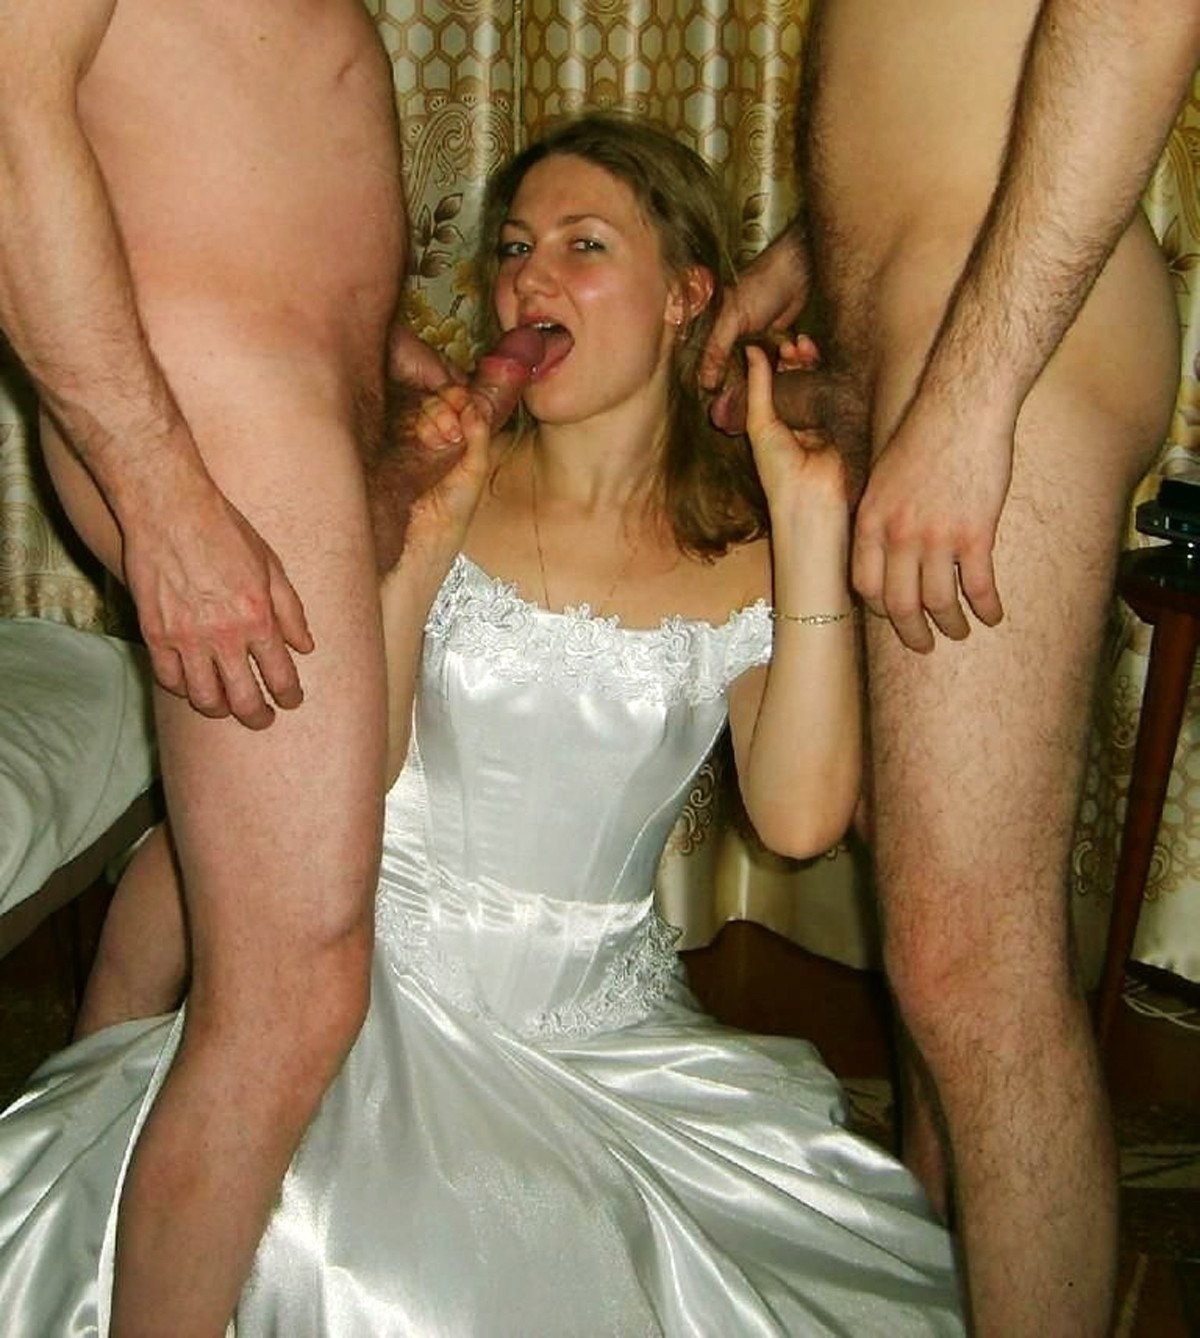 Drunken Bride Porn - Sex in a condom with a drunk bride - HD Porn Videos, Sex Movies, Porn Tube